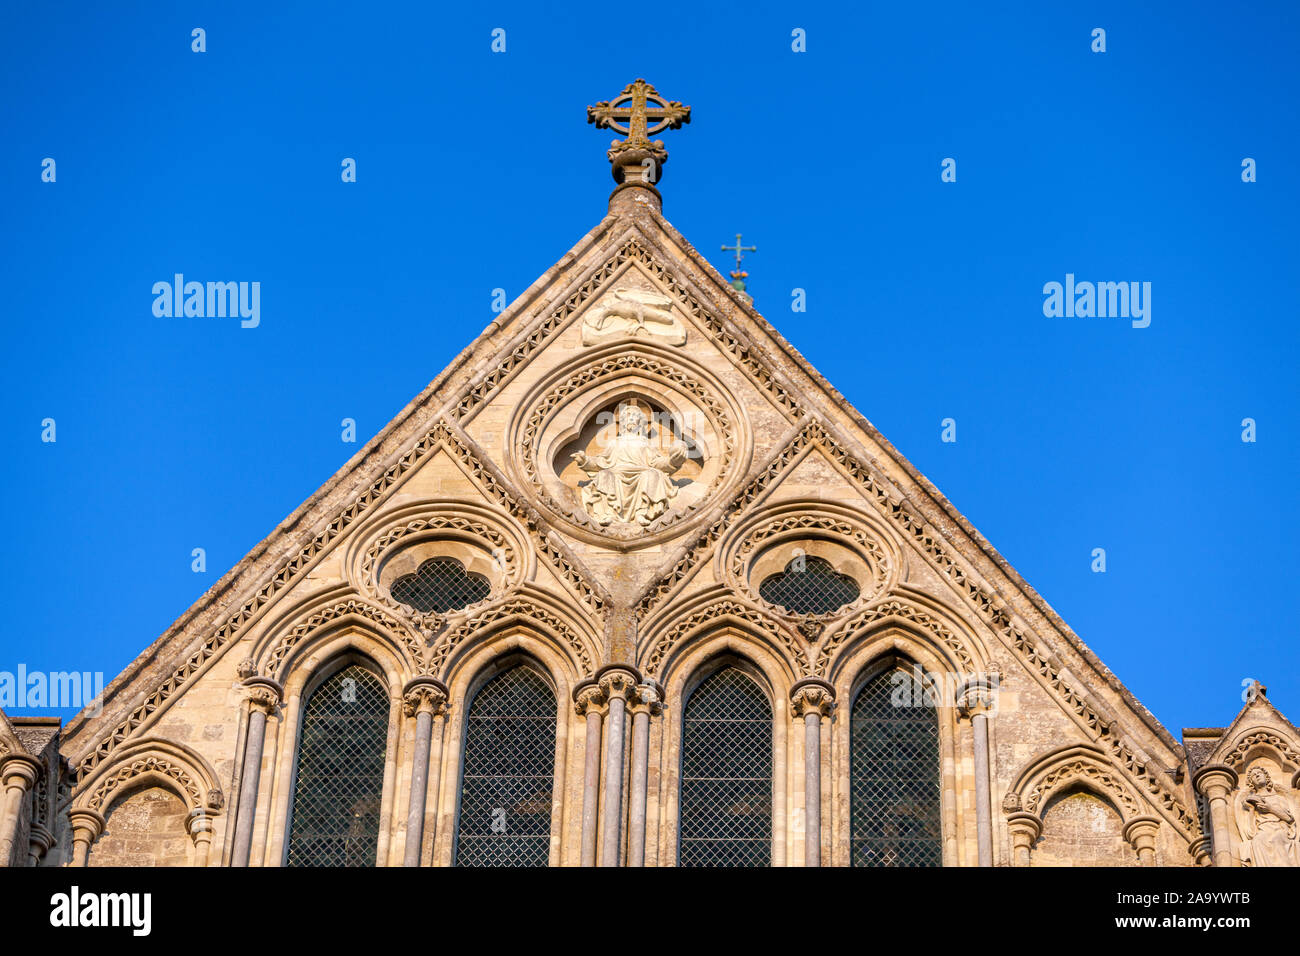 Detalle de la fachada de la Catedral de Salisbury, Salisbury, Wiltshire, Inglaterra, Reino Unido. Foto de stock